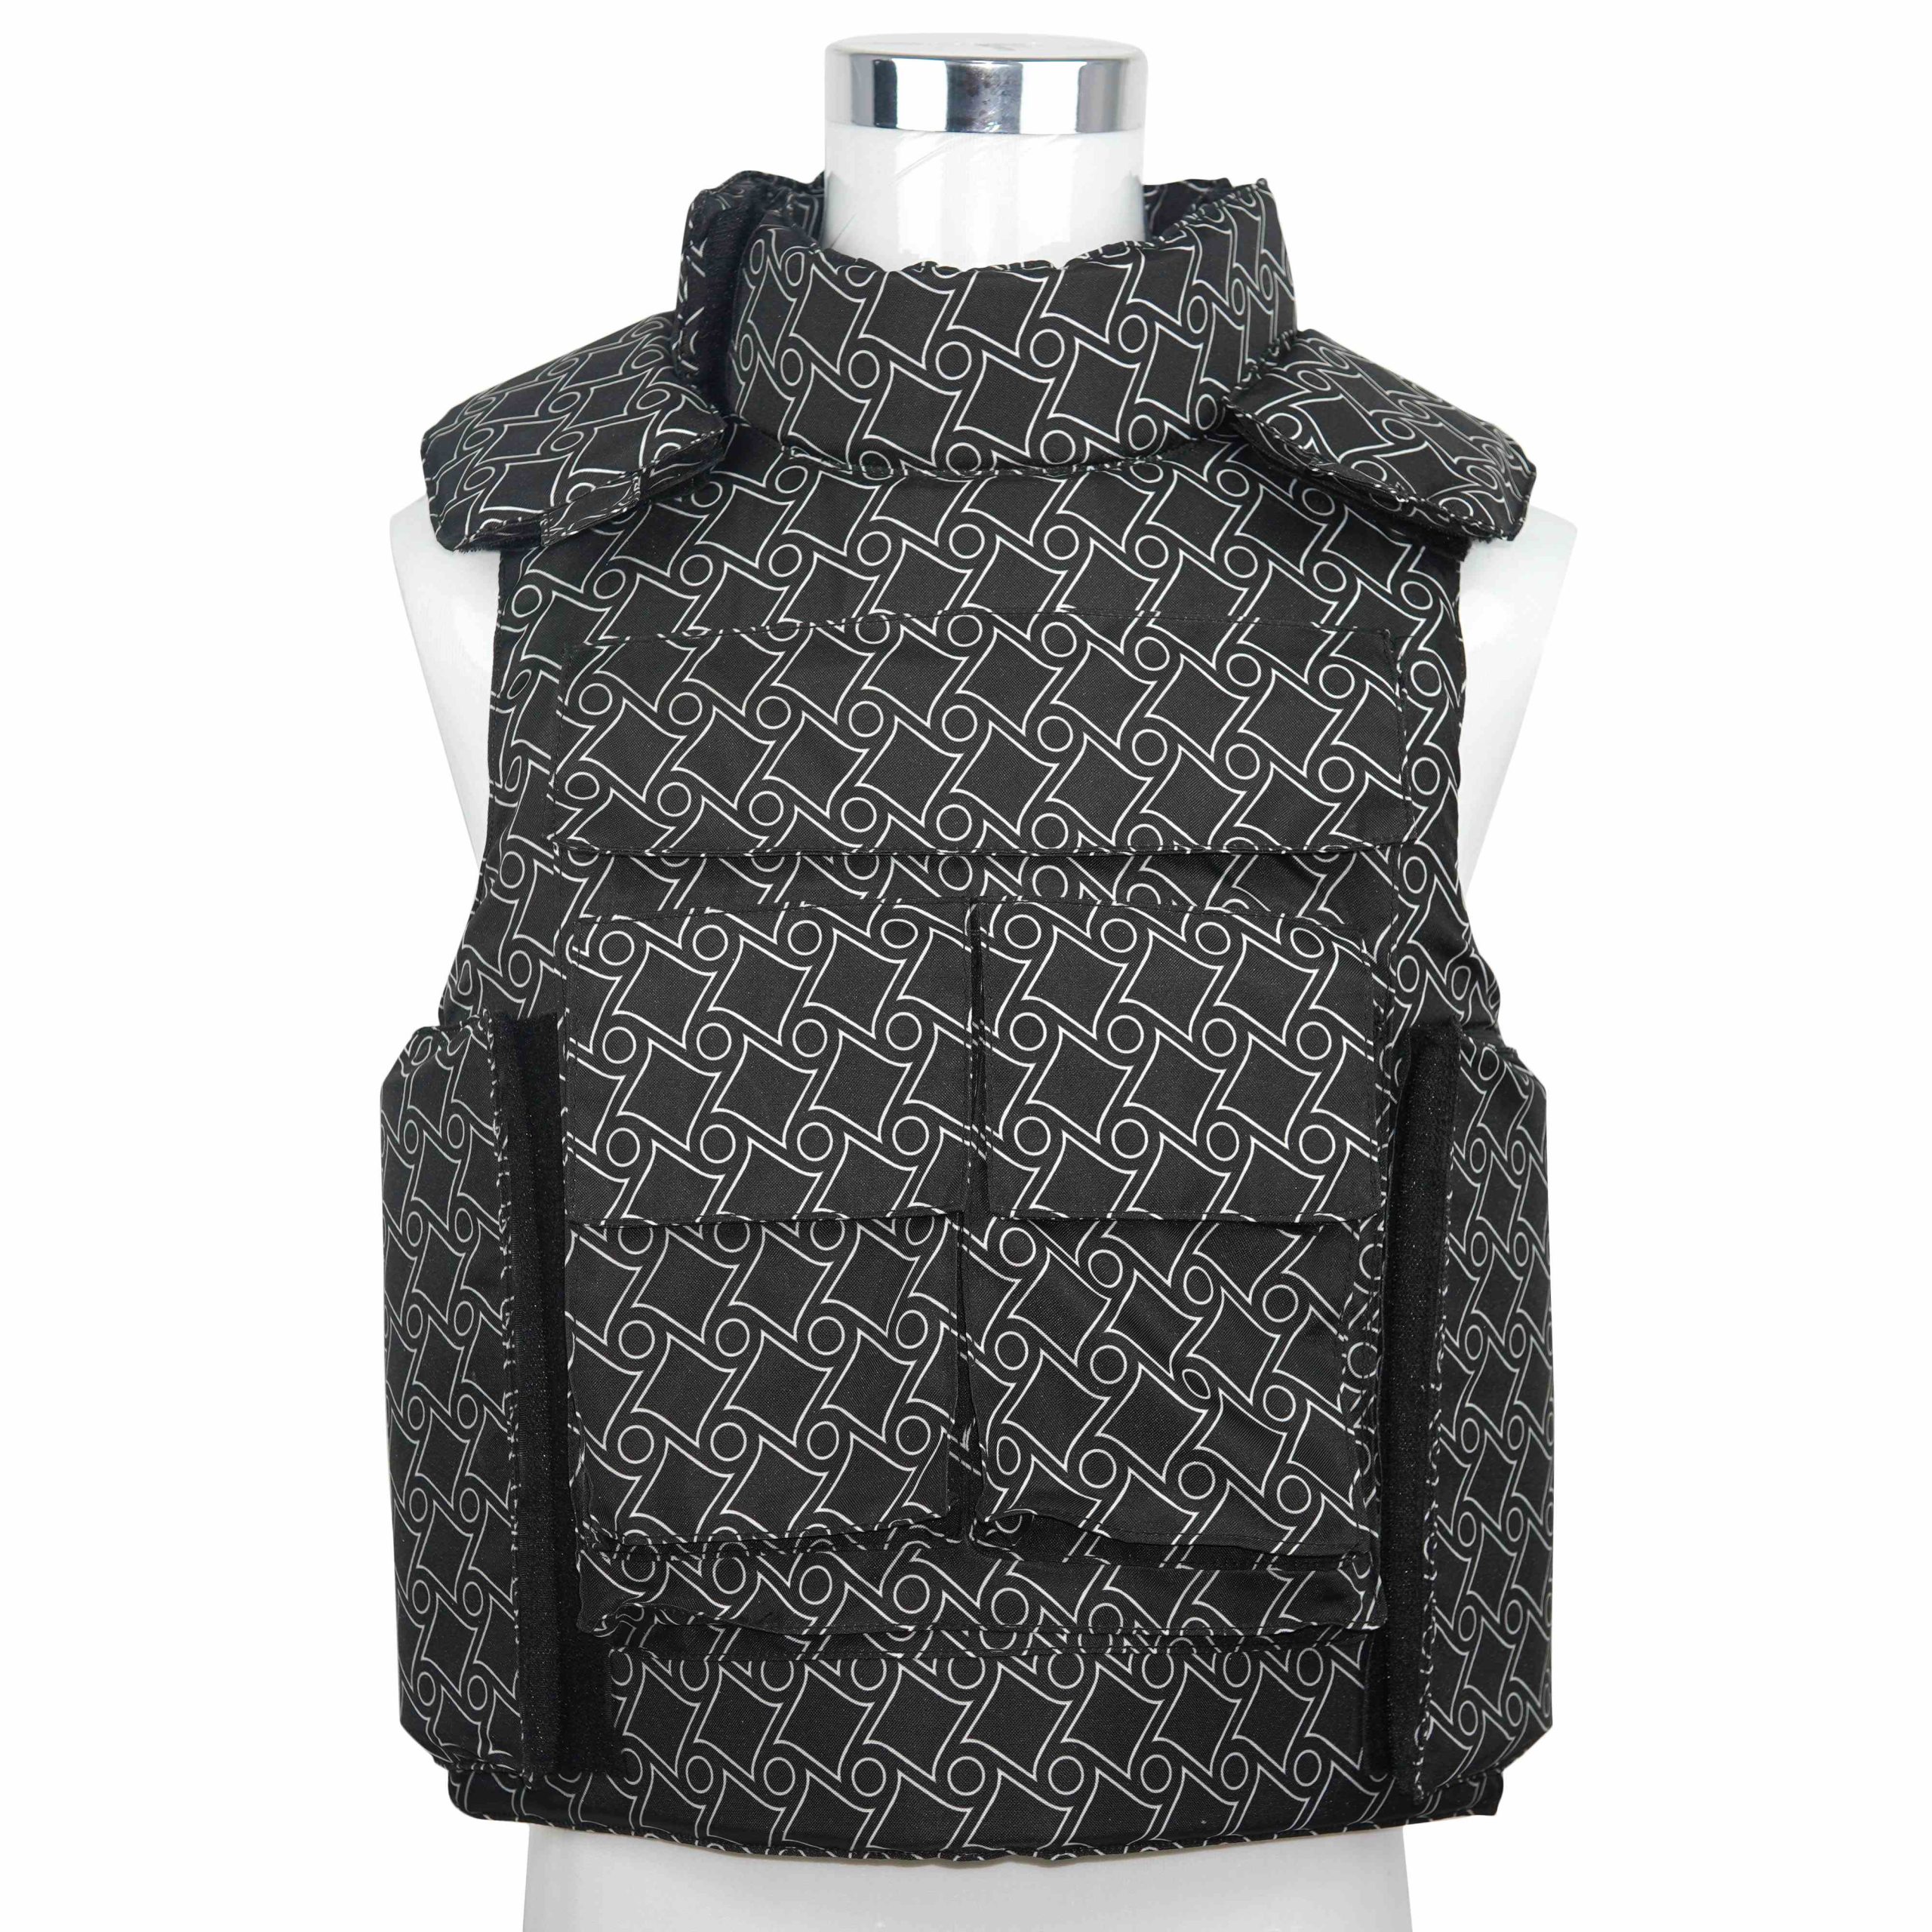 China Full Body Bulletproof Vest V049 manufacturer and supplier